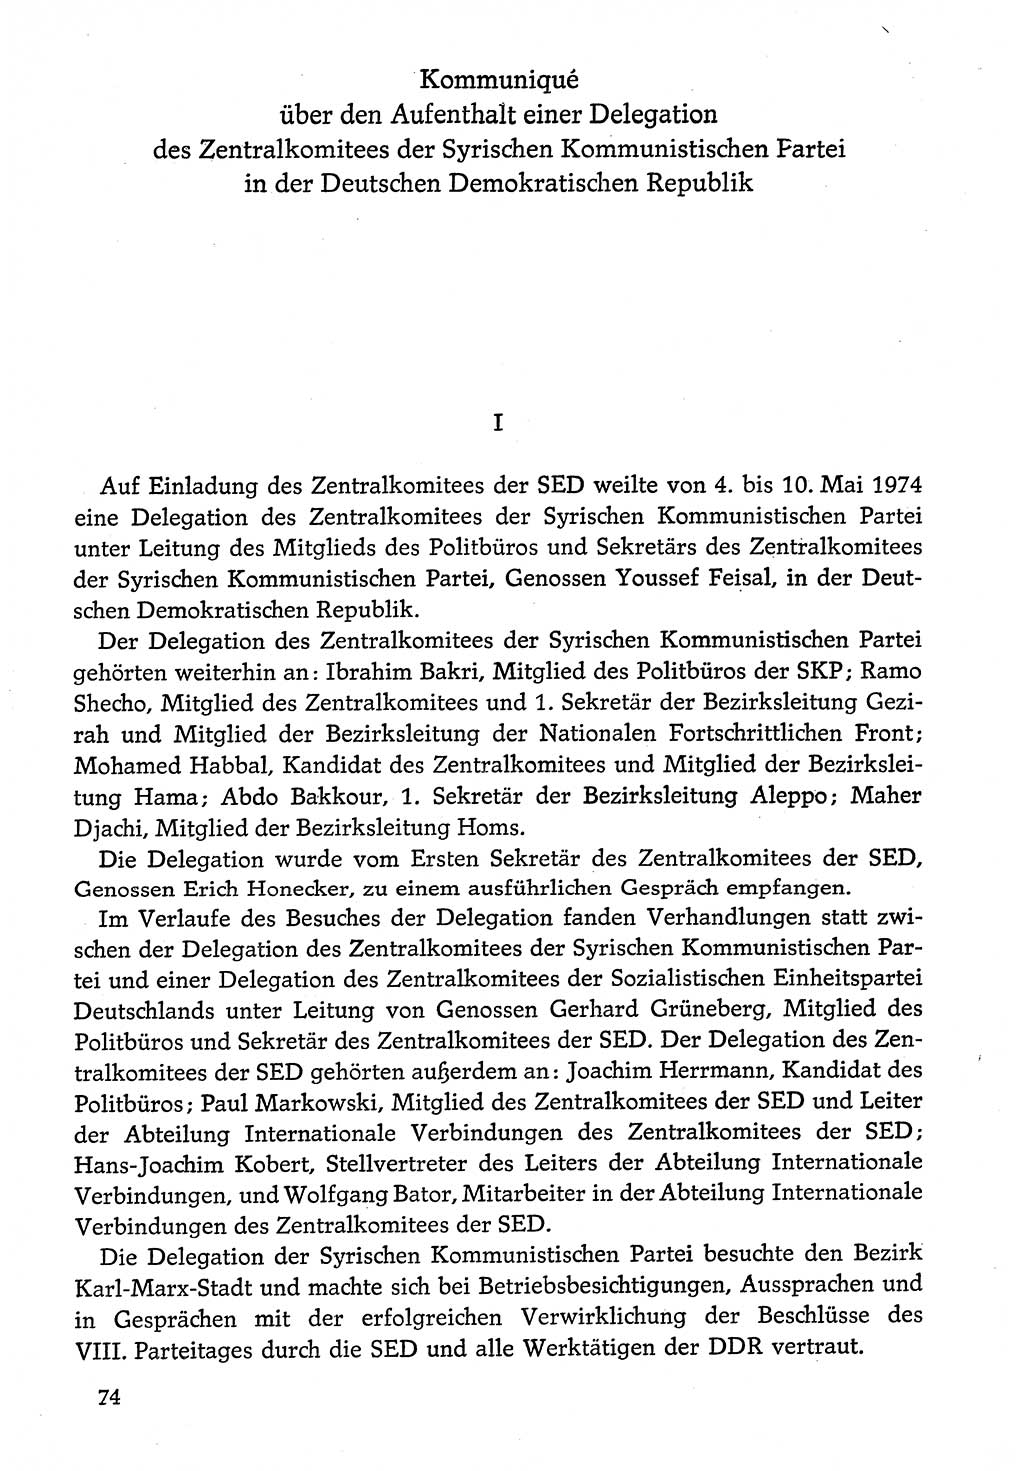 Dokumente der Sozialistischen Einheitspartei Deutschlands (SED) [Deutsche Demokratische Republik (DDR)] 1974-1975, Seite 74 (Dok. SED DDR 1978, Bd. ⅩⅤ, S. 74)